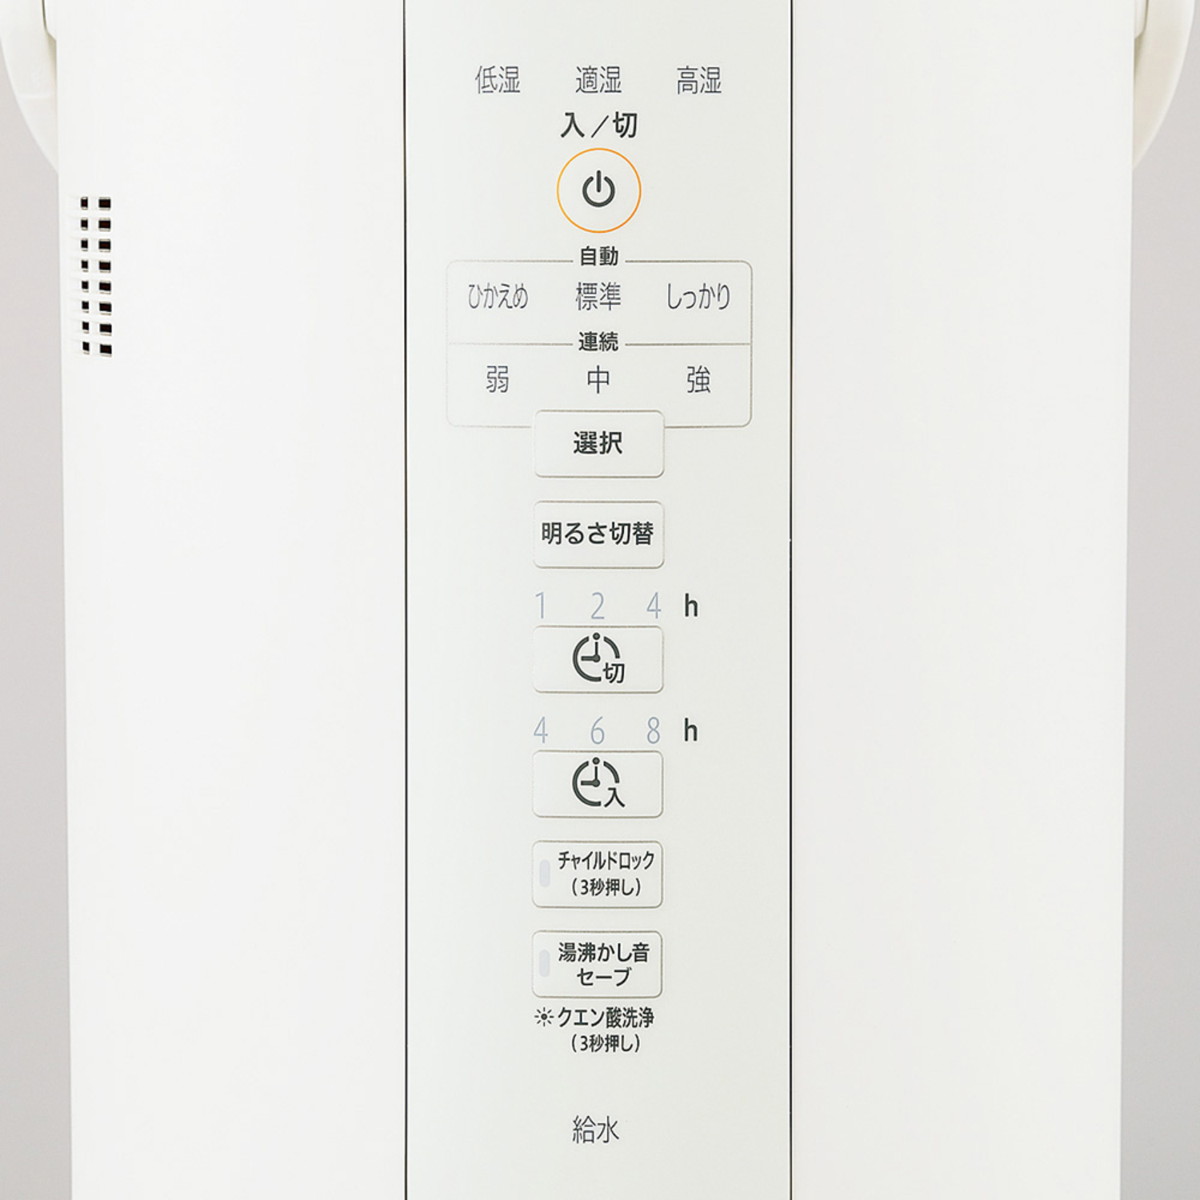 ZOJIRUSHI スチーム式加湿器 3.0L ホワイト 大容量 木造6畳まで/プレハブ洋室10畳まで 乾燥対策